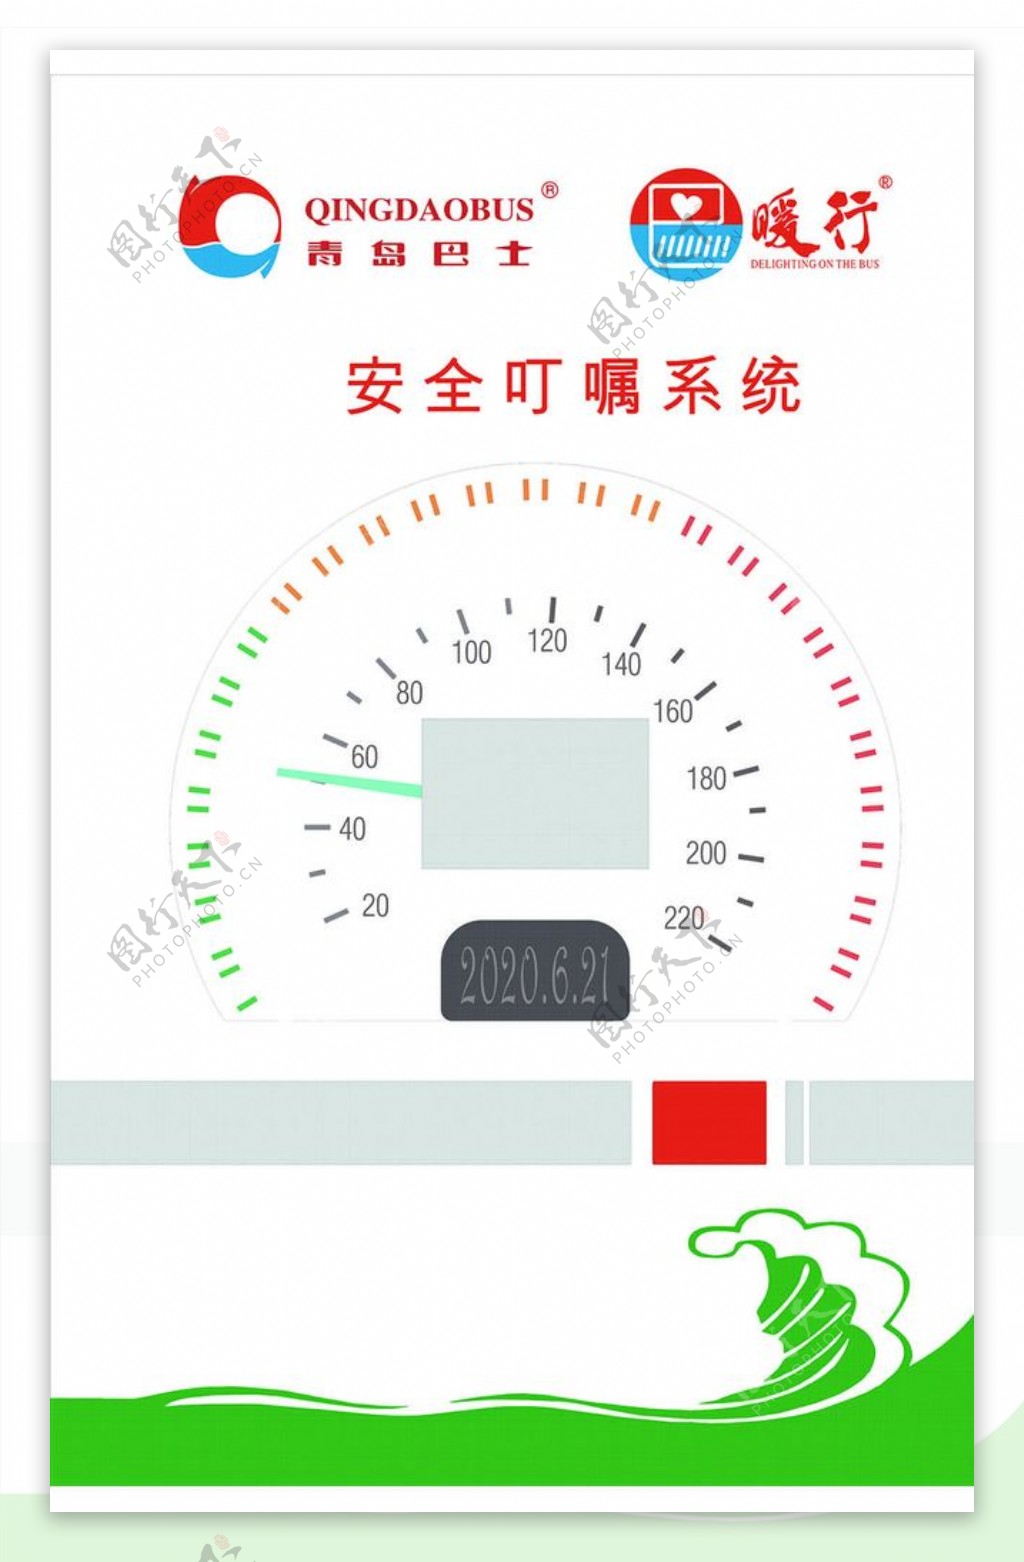 青岛巴士logo安全叮嘱系统